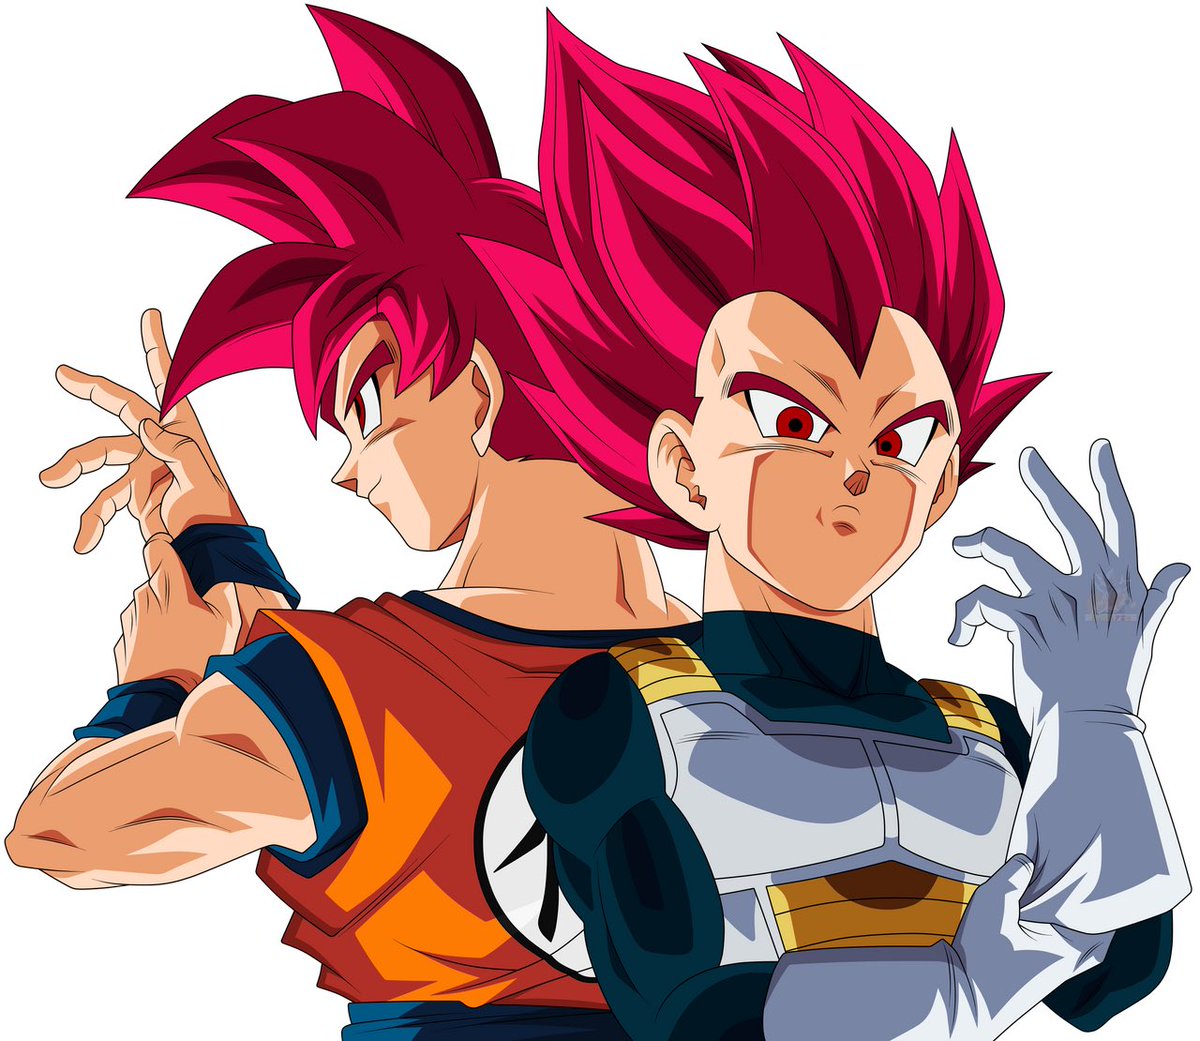 Enfin, c’est totalement subjectif, mais je préfère l’évolution de Goku et Vegeta (en tant que guerrier) dans DBS, car après avoir atteint l’apothéose de leurs pouvoirs Saiyans, ils visent désormais à atteindre celle de leurs pouvoirs divins (nouvelle dynamique qui me plait)[5/5]